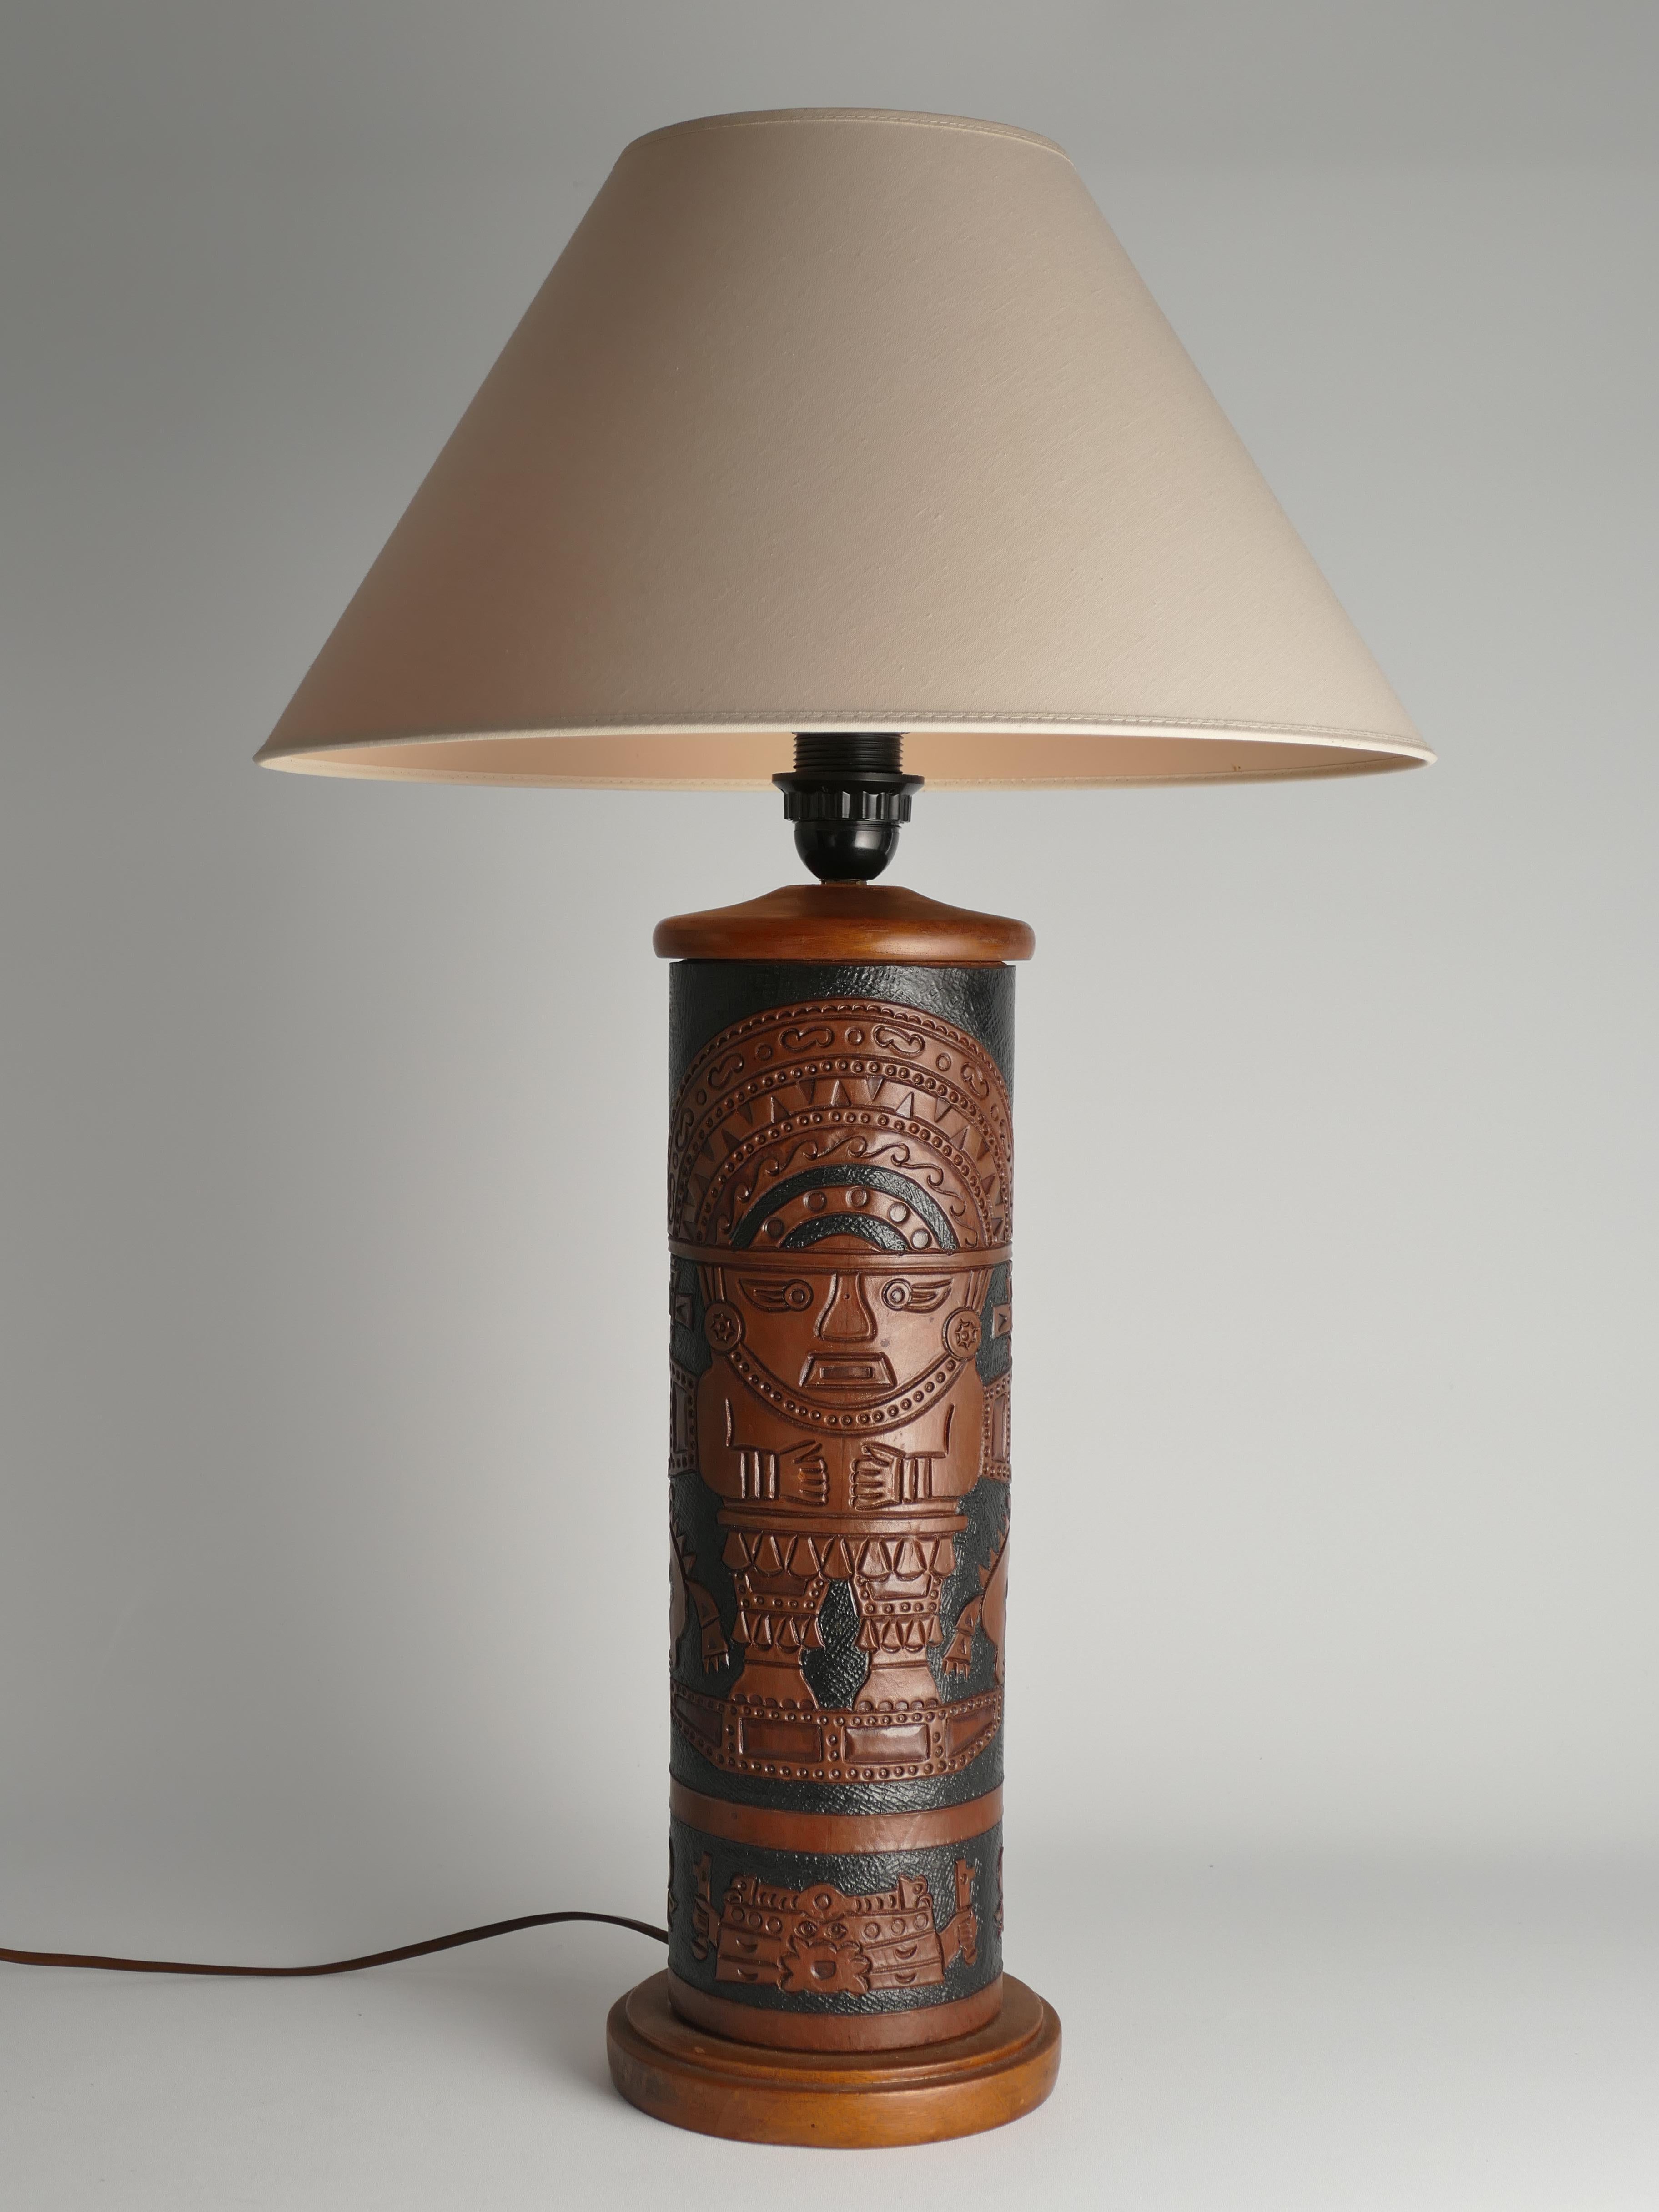 Cette lampe de table présente ce qui semble être une base en cuir travaillée à la main avec un motif mural aztèque noir et brun. La base de la lampe, tant en bas qu'en haut, semble être fabriquée en noyer.

DIMENSIONS
Hauteur (luminaire non inclus)